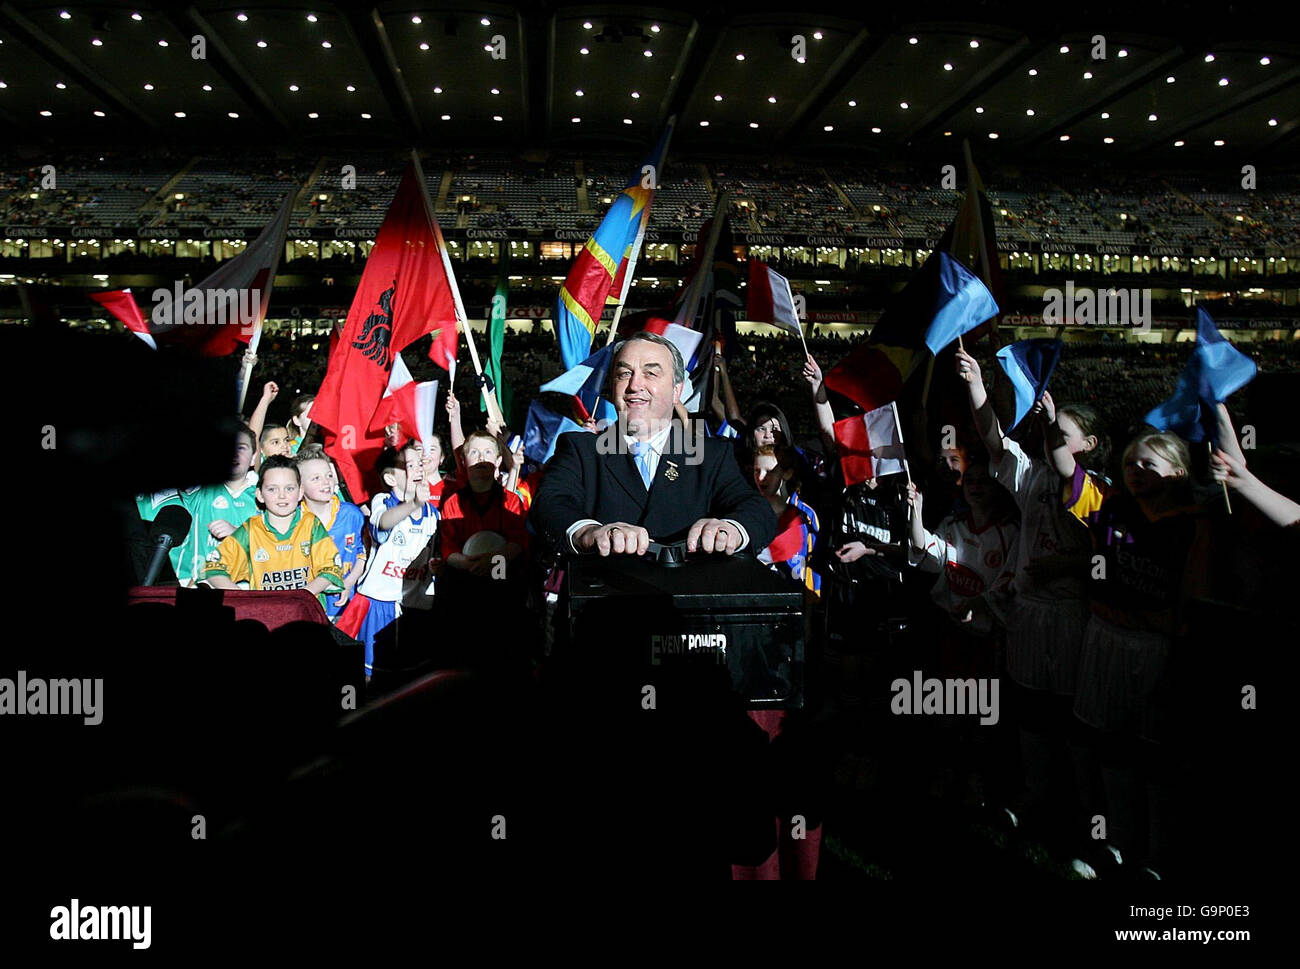 Primo gioco sotto i riflettori a Croke. Il presidente della GAA Nicky Brennan accende ufficialmente le luci della prima partita di calcio gaelica che si tiene stasera sotto i riflettori al Croke Park. Foto Stock